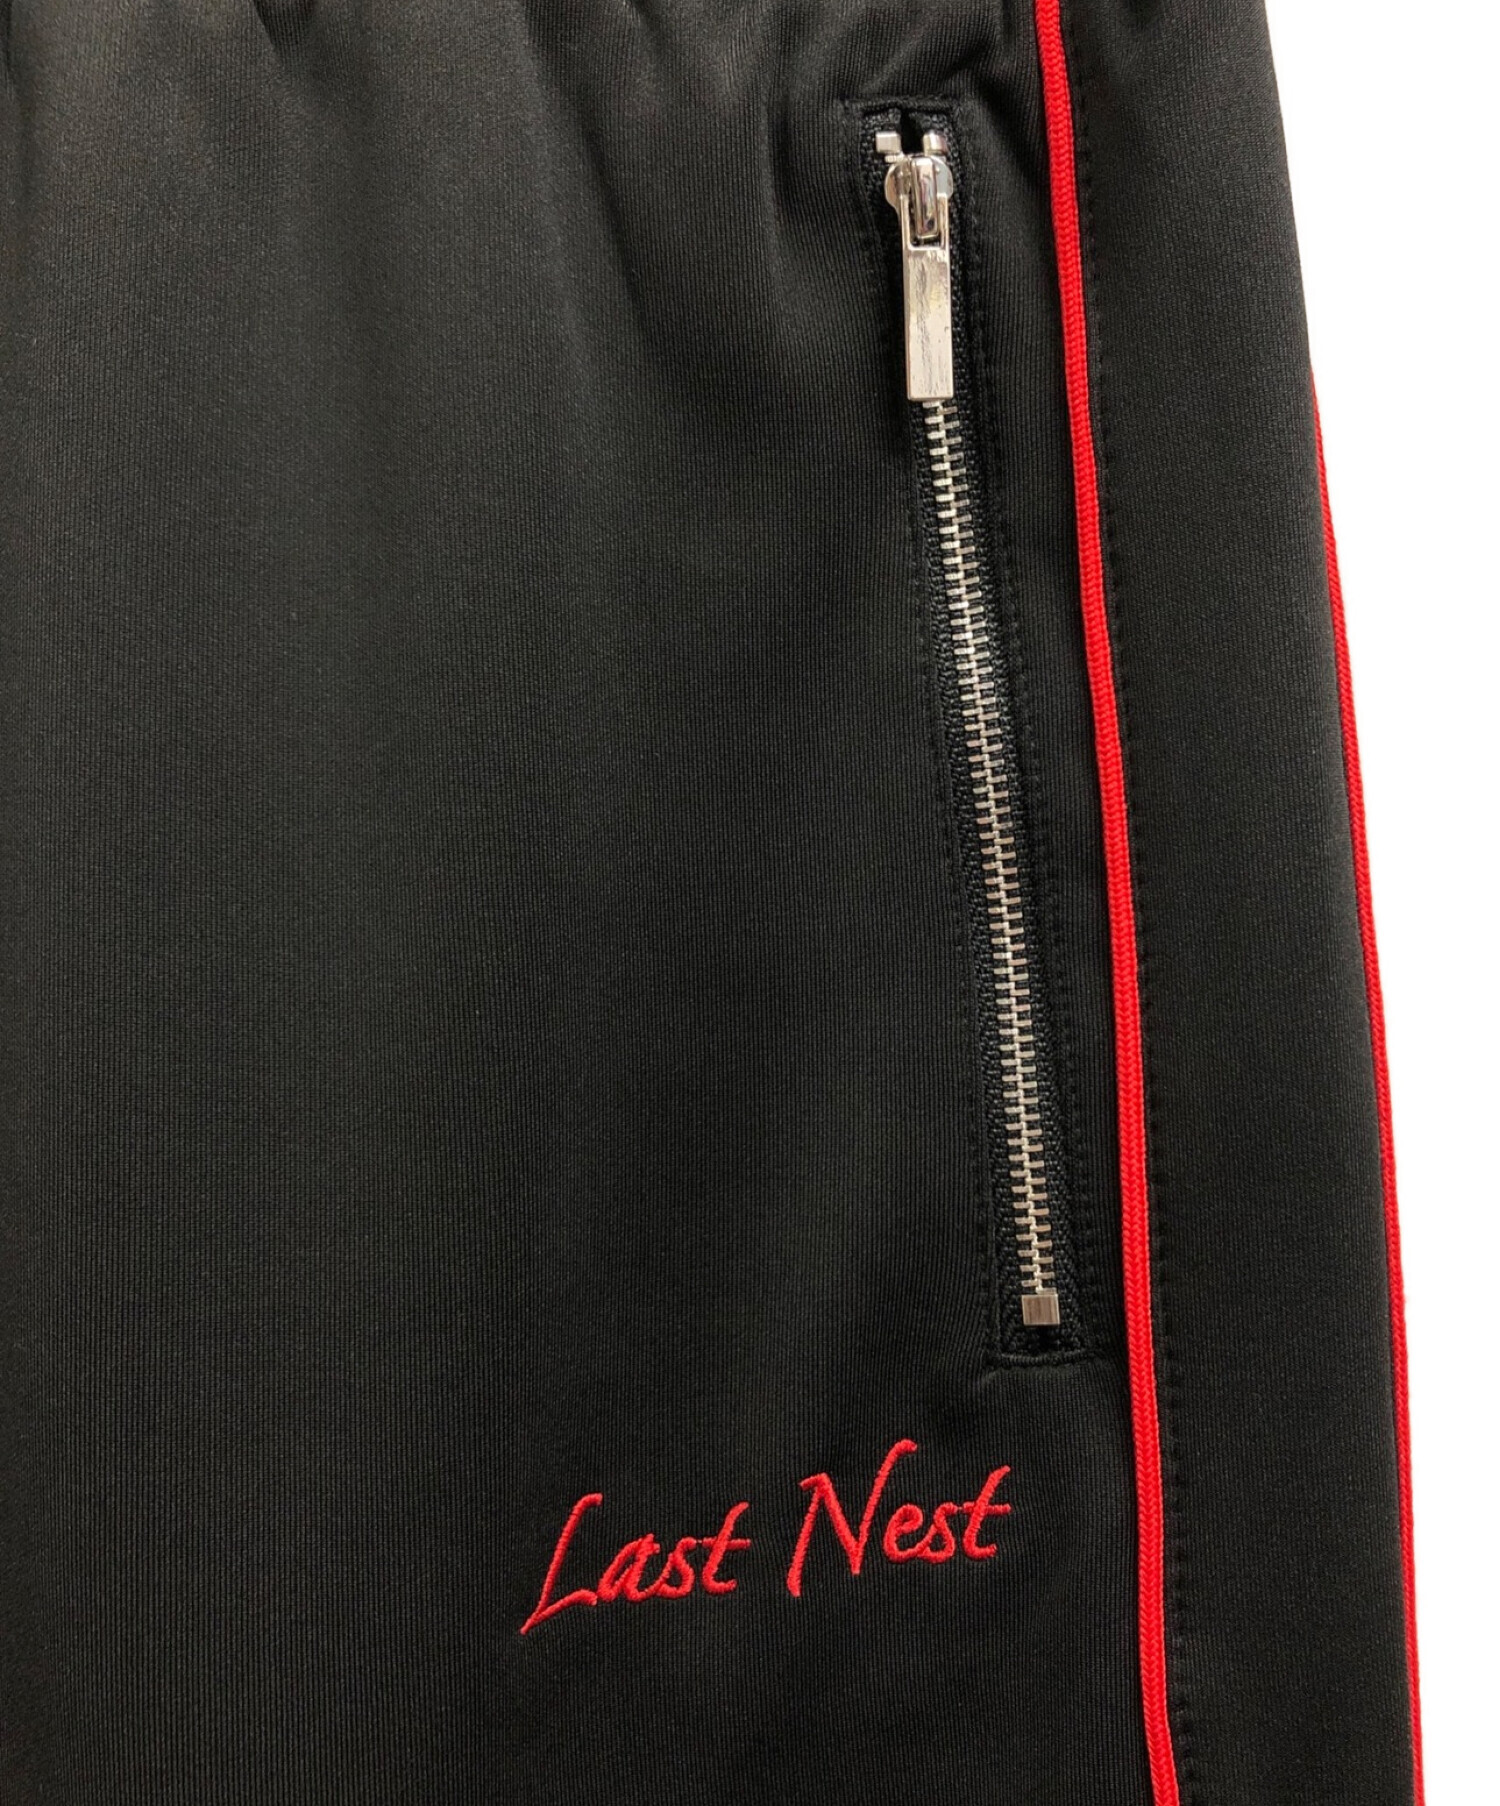 LAST NEST (ラストネスト) EMBROIDERED TRACK PANTS ブラック サイズ:M 未使用品